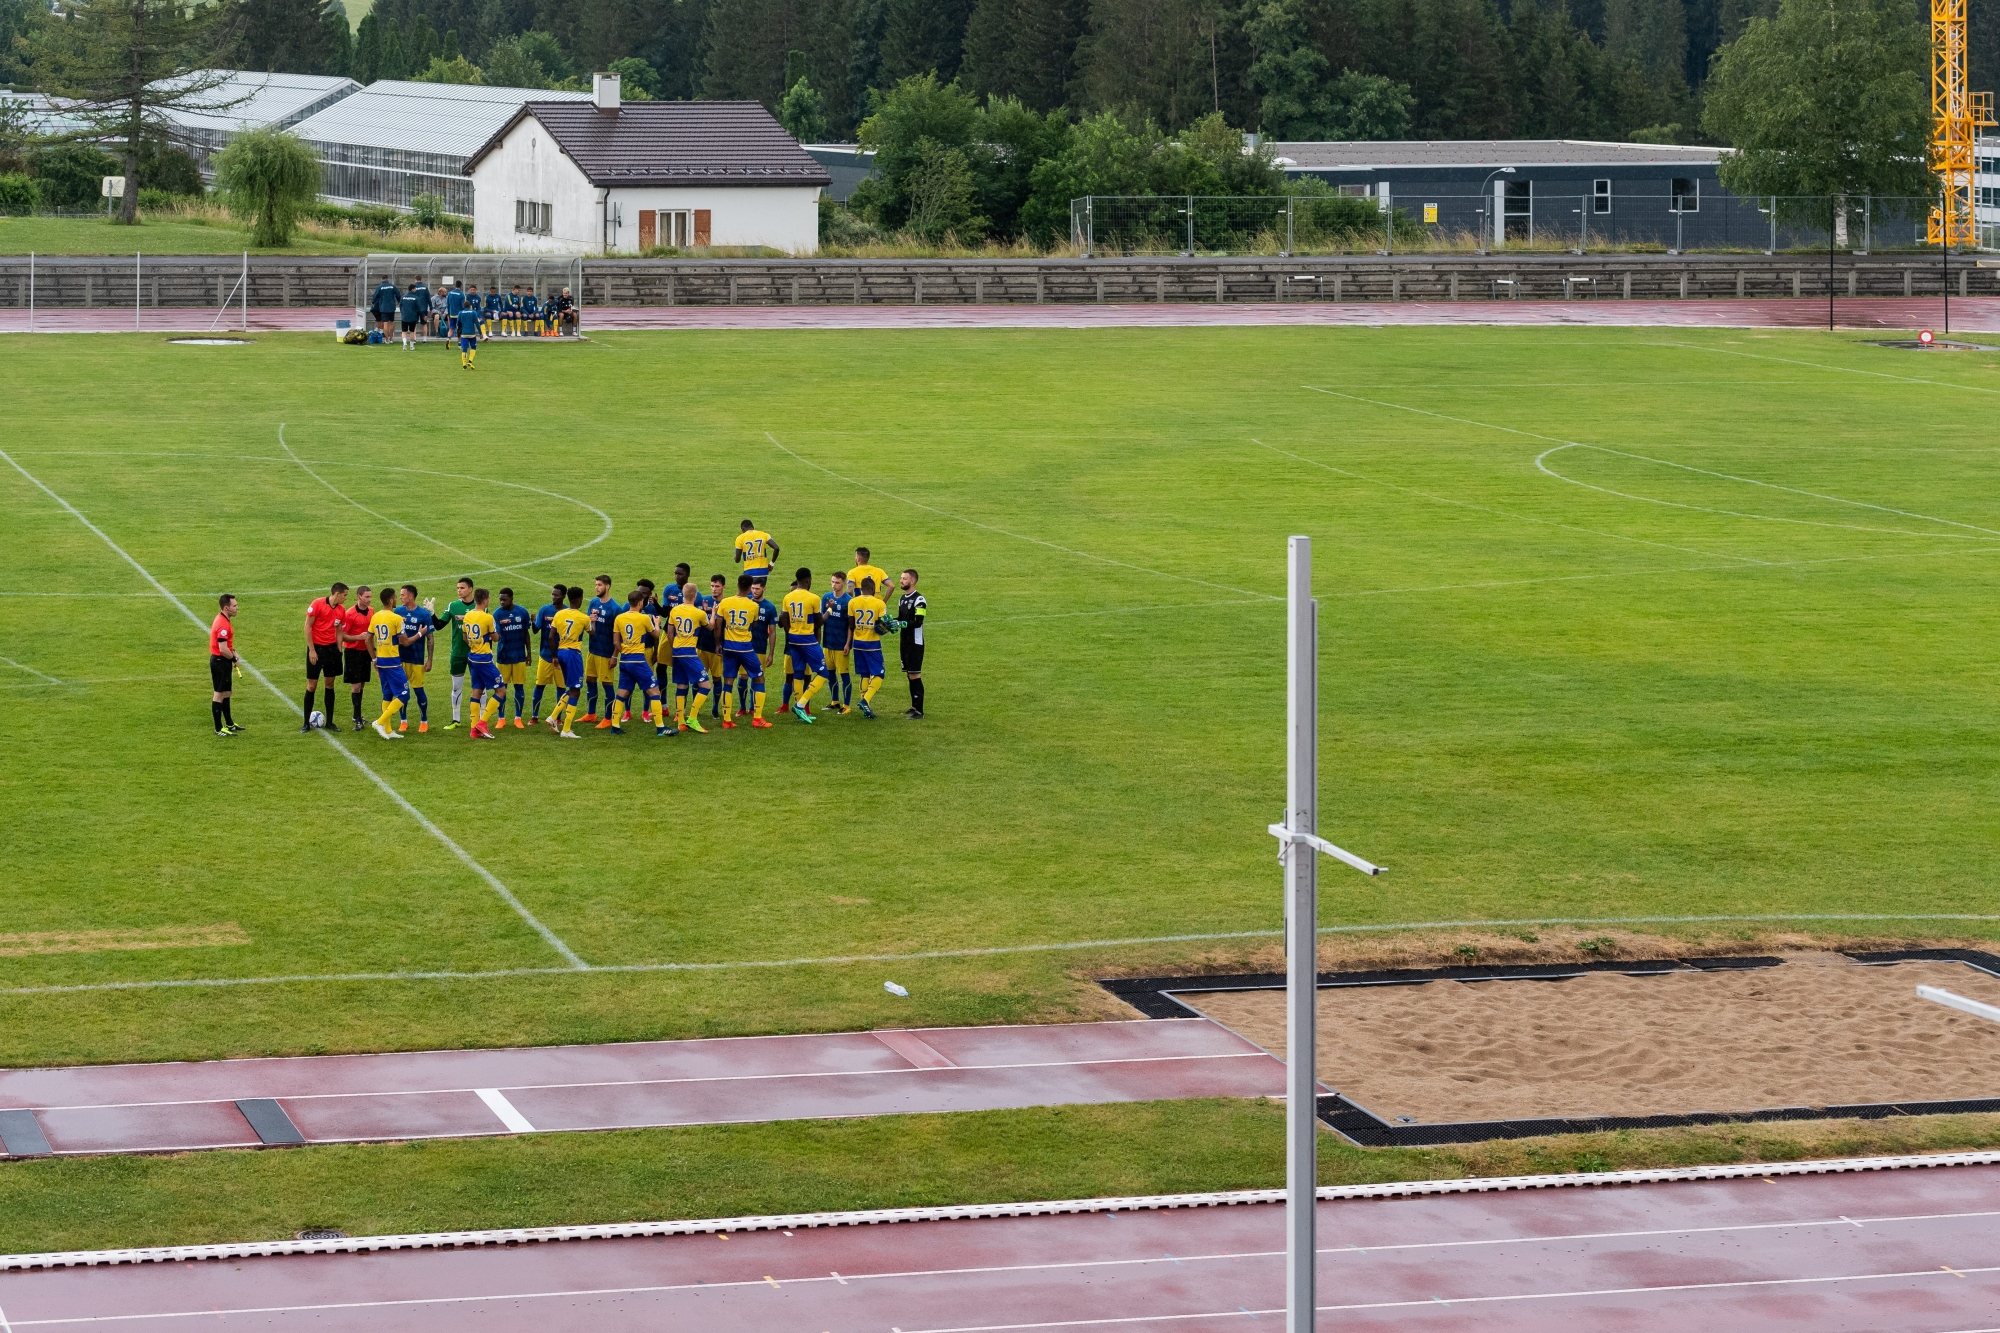 Match amical entre le FCC et Sochaux.

La Chaux-de-Fonds, le 3 juillet 2018
Photo : Lucas Vuitel